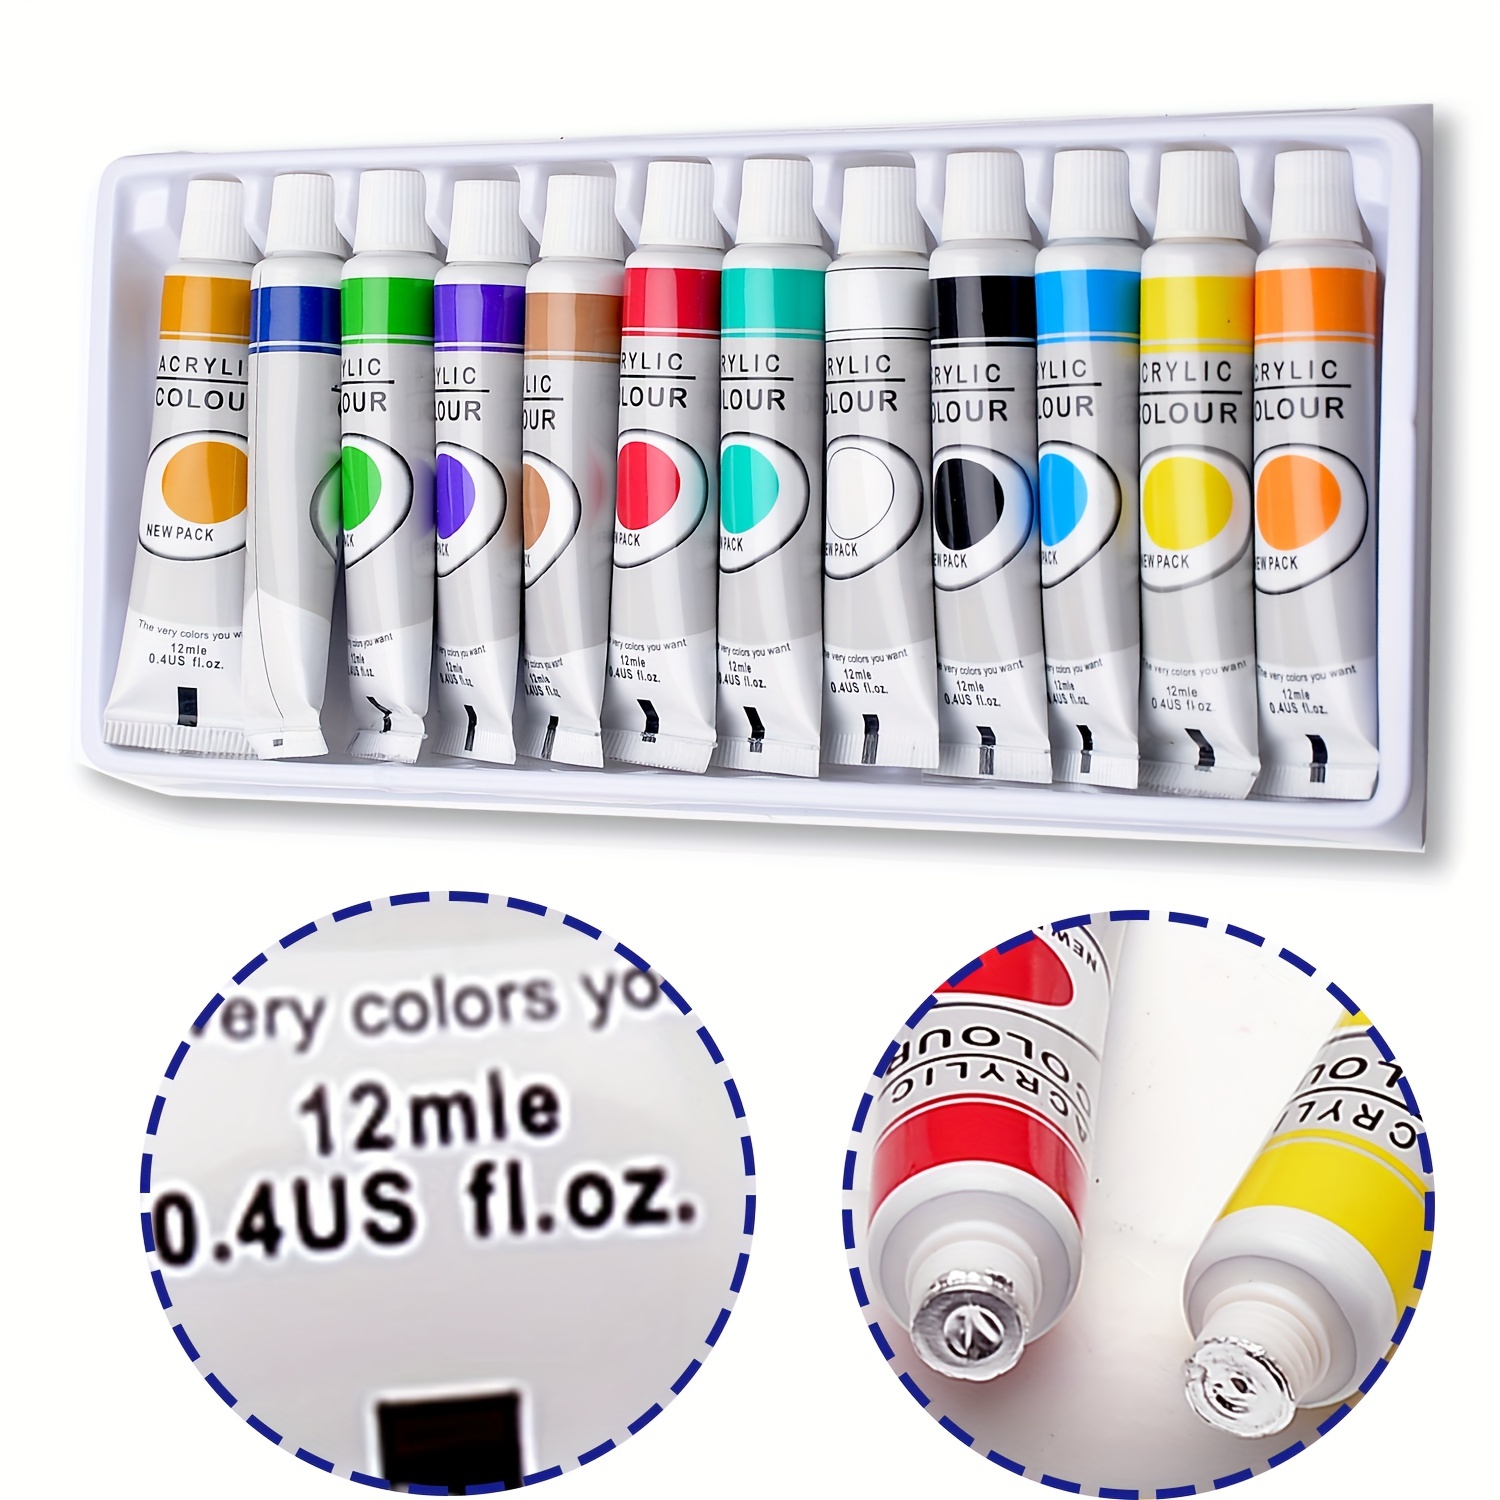 HIMI Gouache Paint, 24 Colors, 12ml, 0.4 US fl oz Tubes, Non Toxic